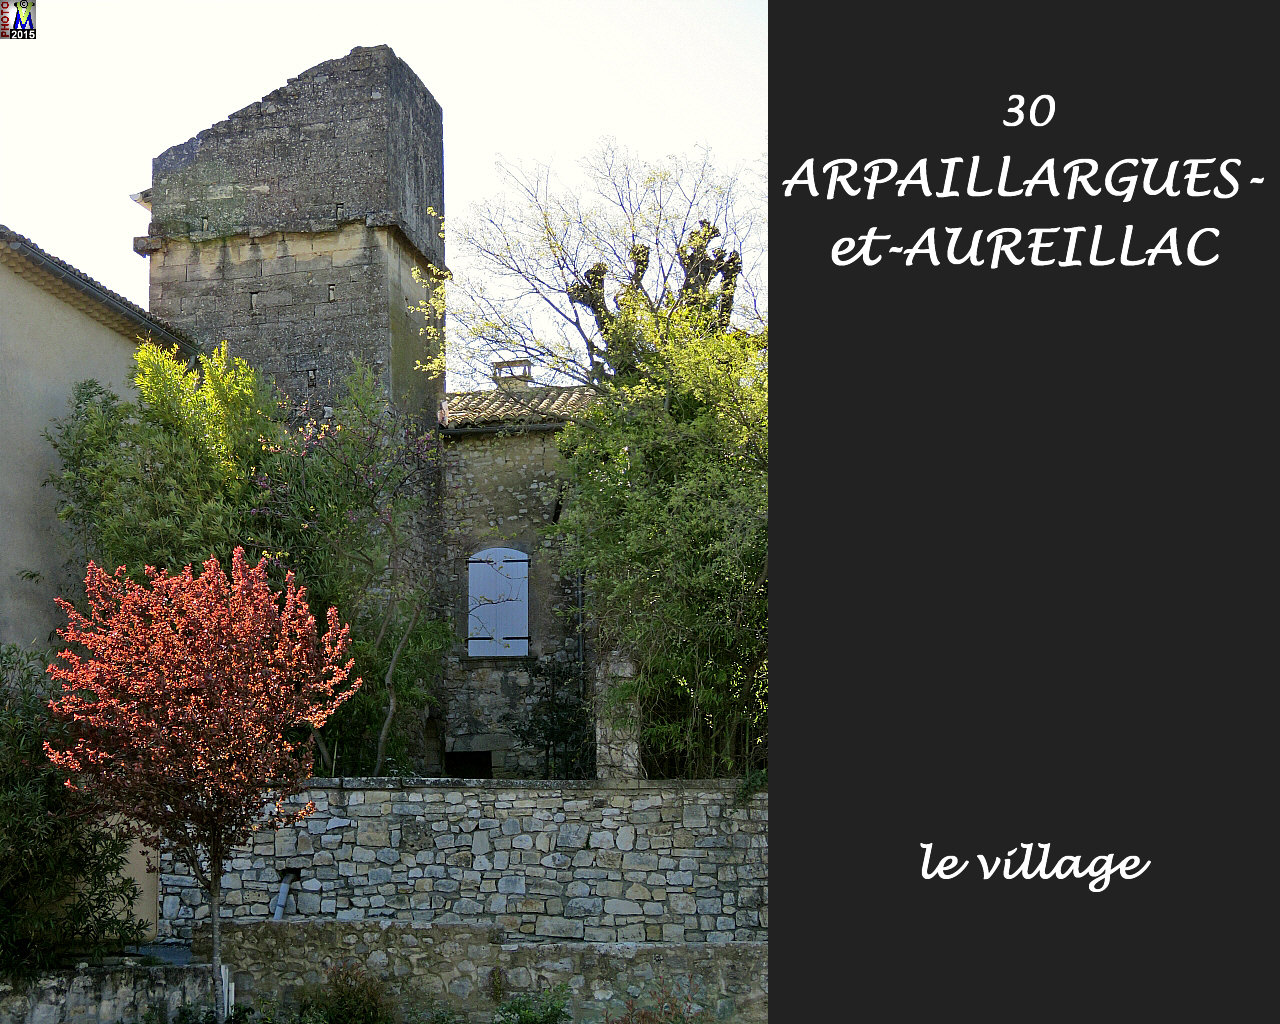 30ARPAILLARGUES_village_114.jpg